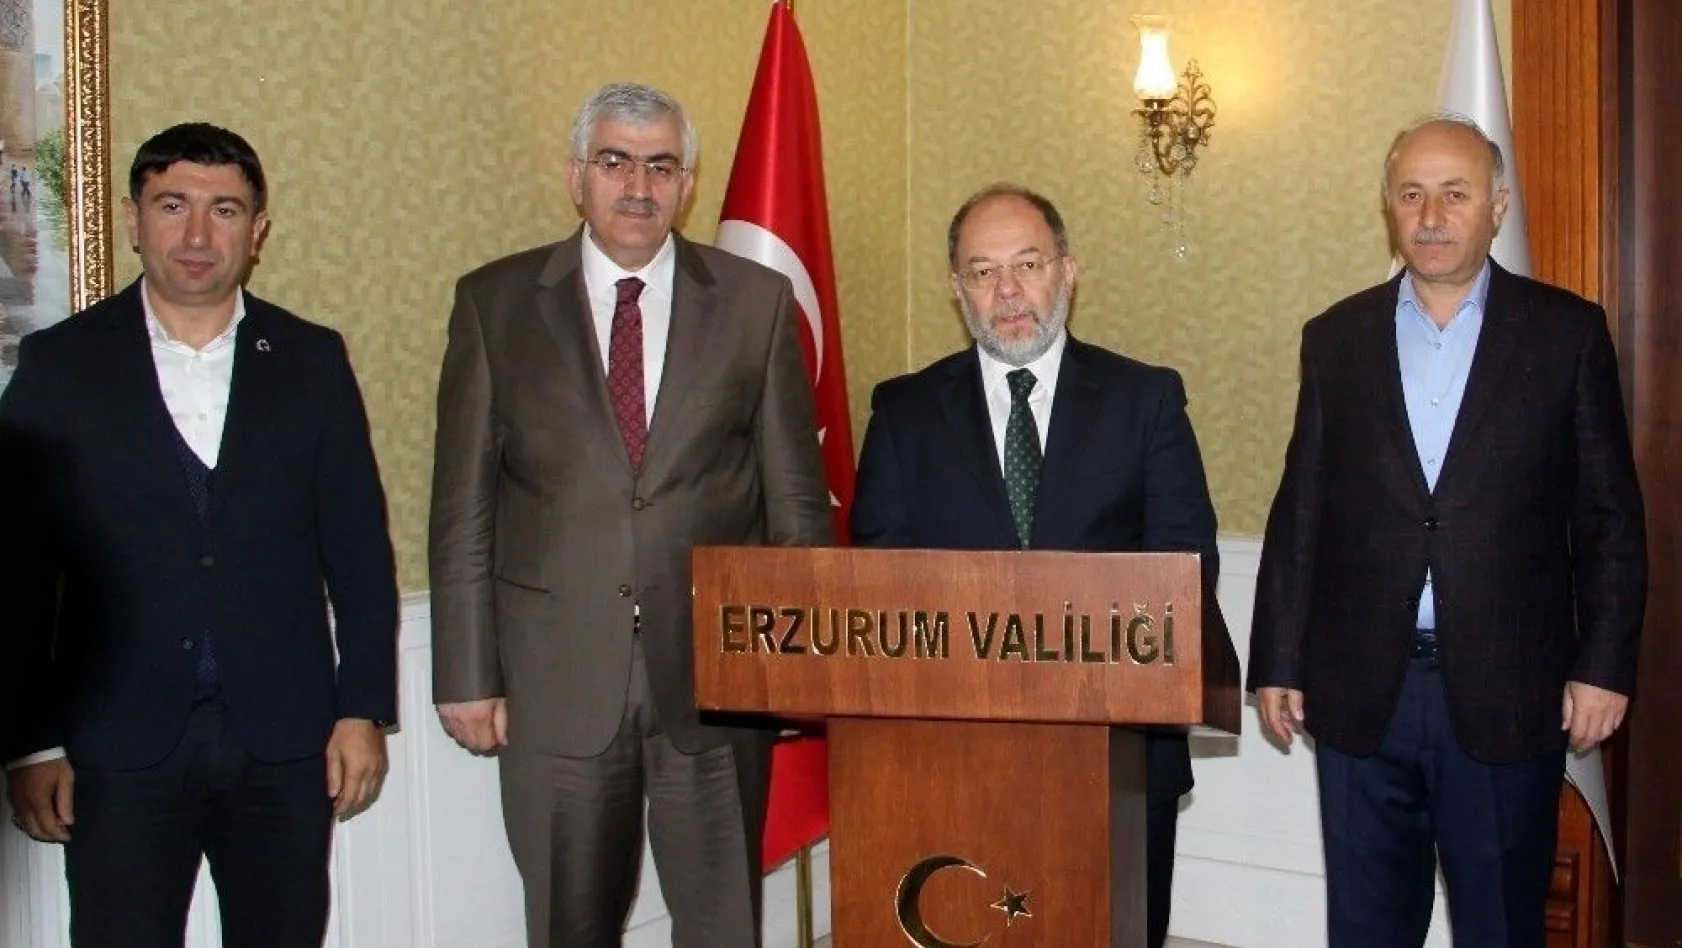 Başbakan Yardımcısı Akdağ: 'Avrupa'da çifte standart uygulaması şeklinde yaklaşımlar olduğunu bir kez daha müşahede ettik'
